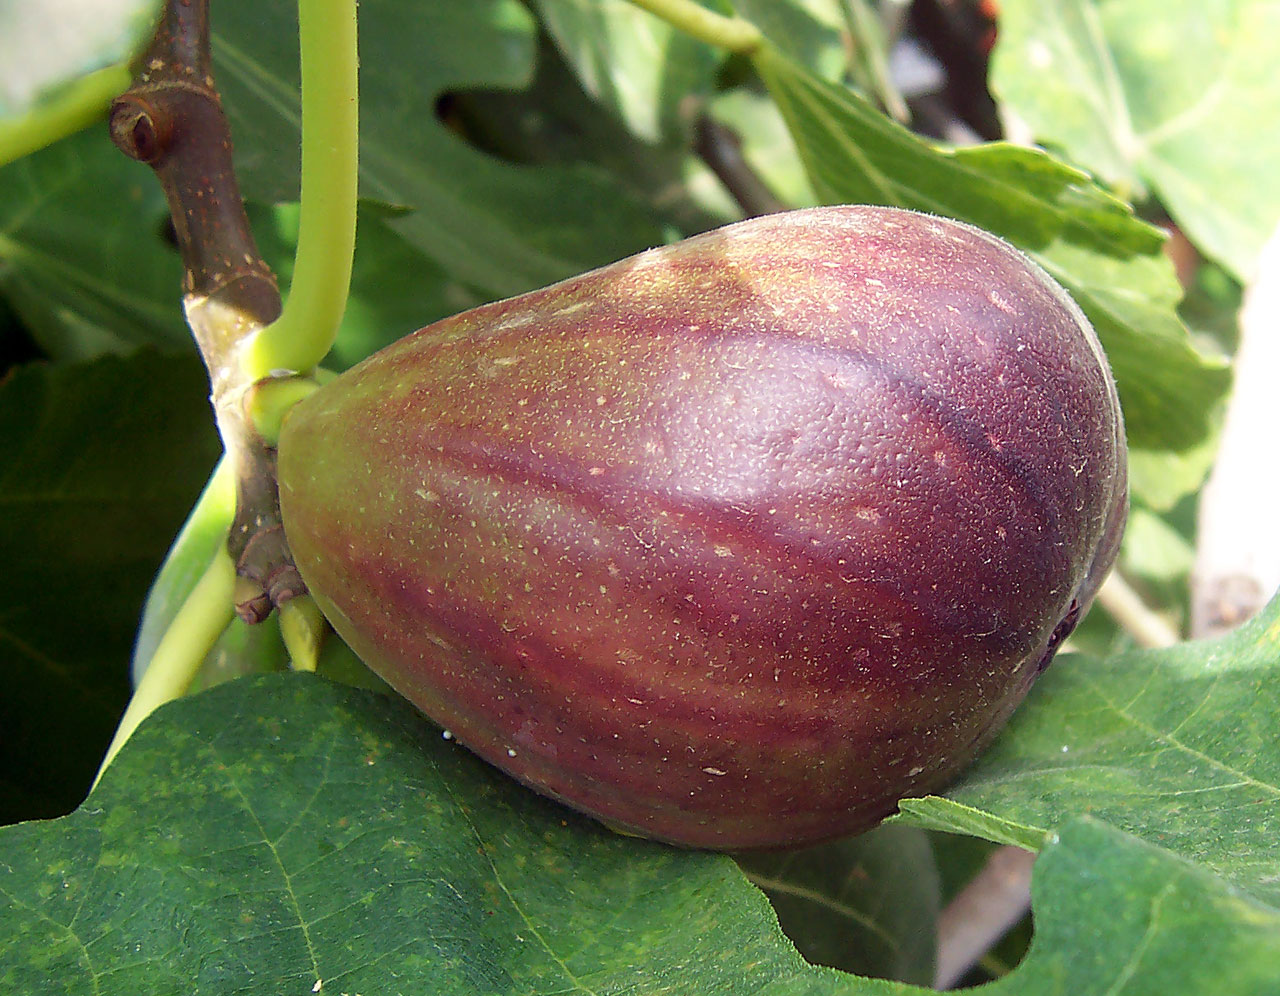 La figue est un fruit typiquement méditerranéen riche en minéraux. © Wikimedia Commons